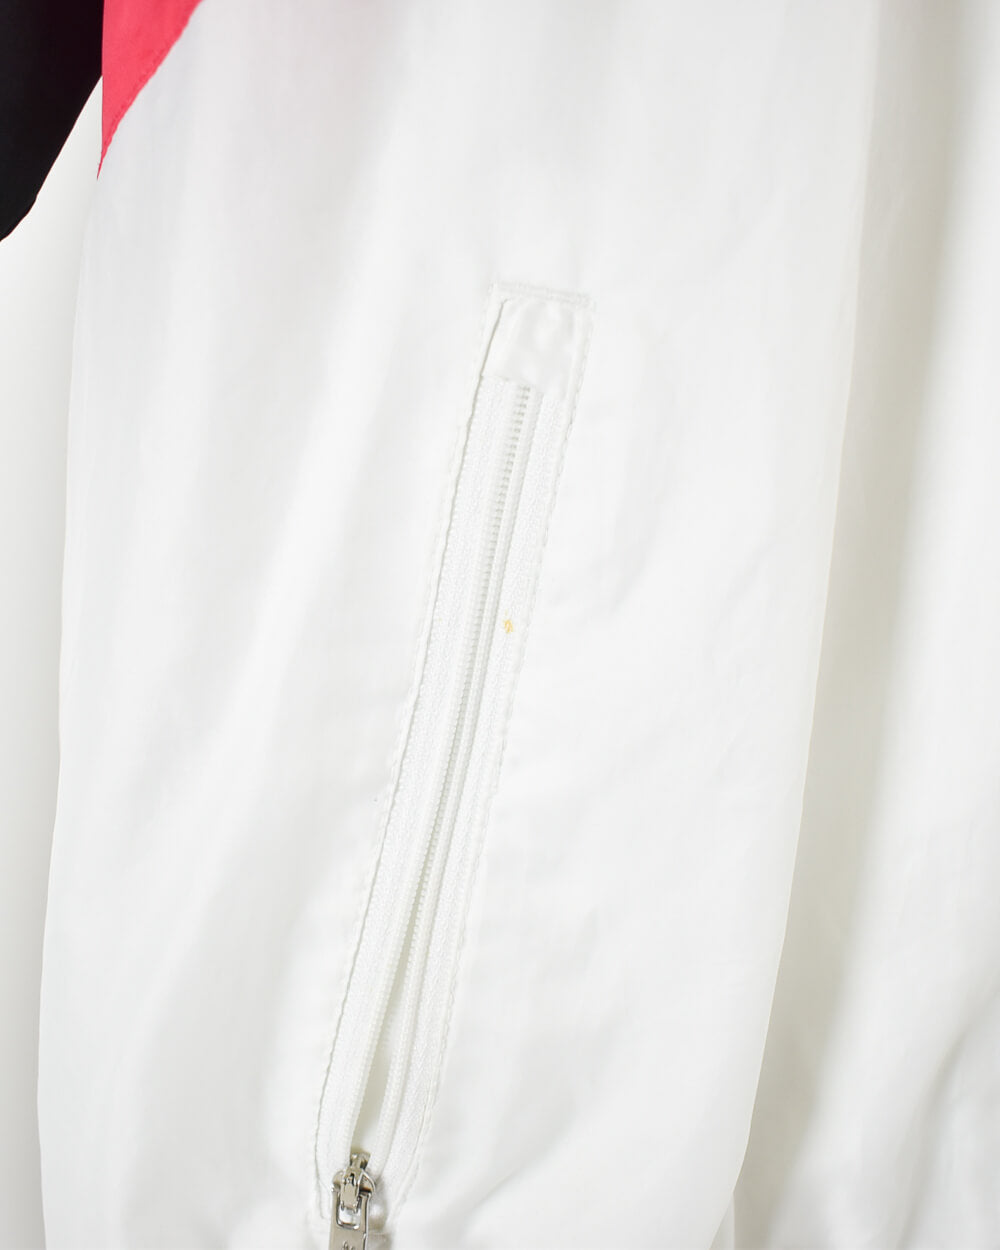 White Nike Shell Jacket - Medium